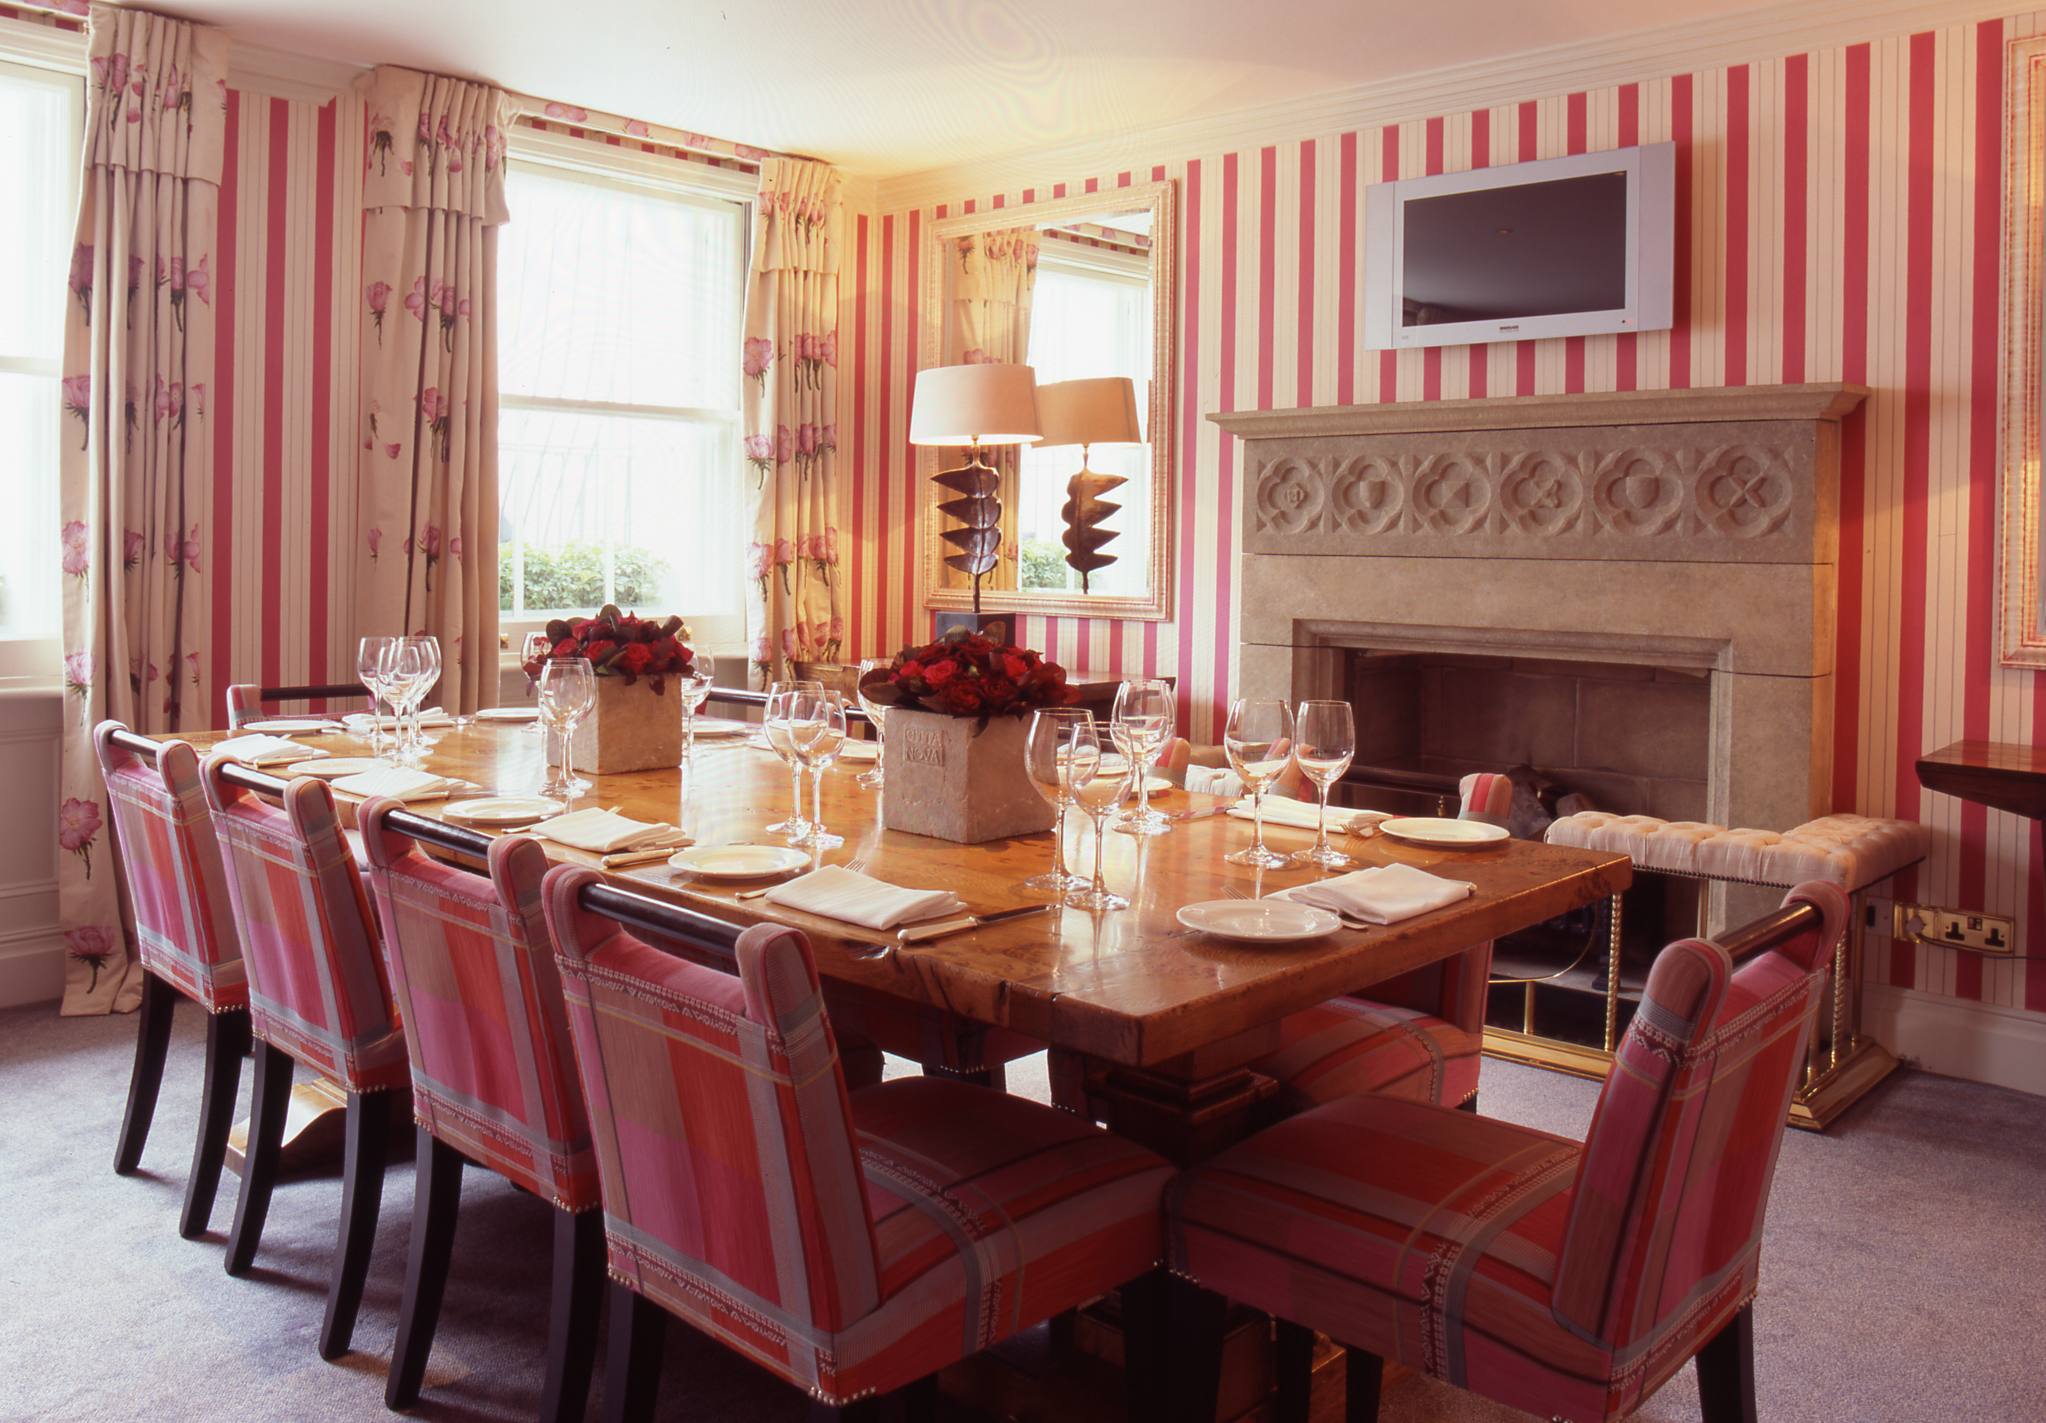 Private Dining Room - The Pelham Hotel - Event Venue Hire - Tagvenue.com